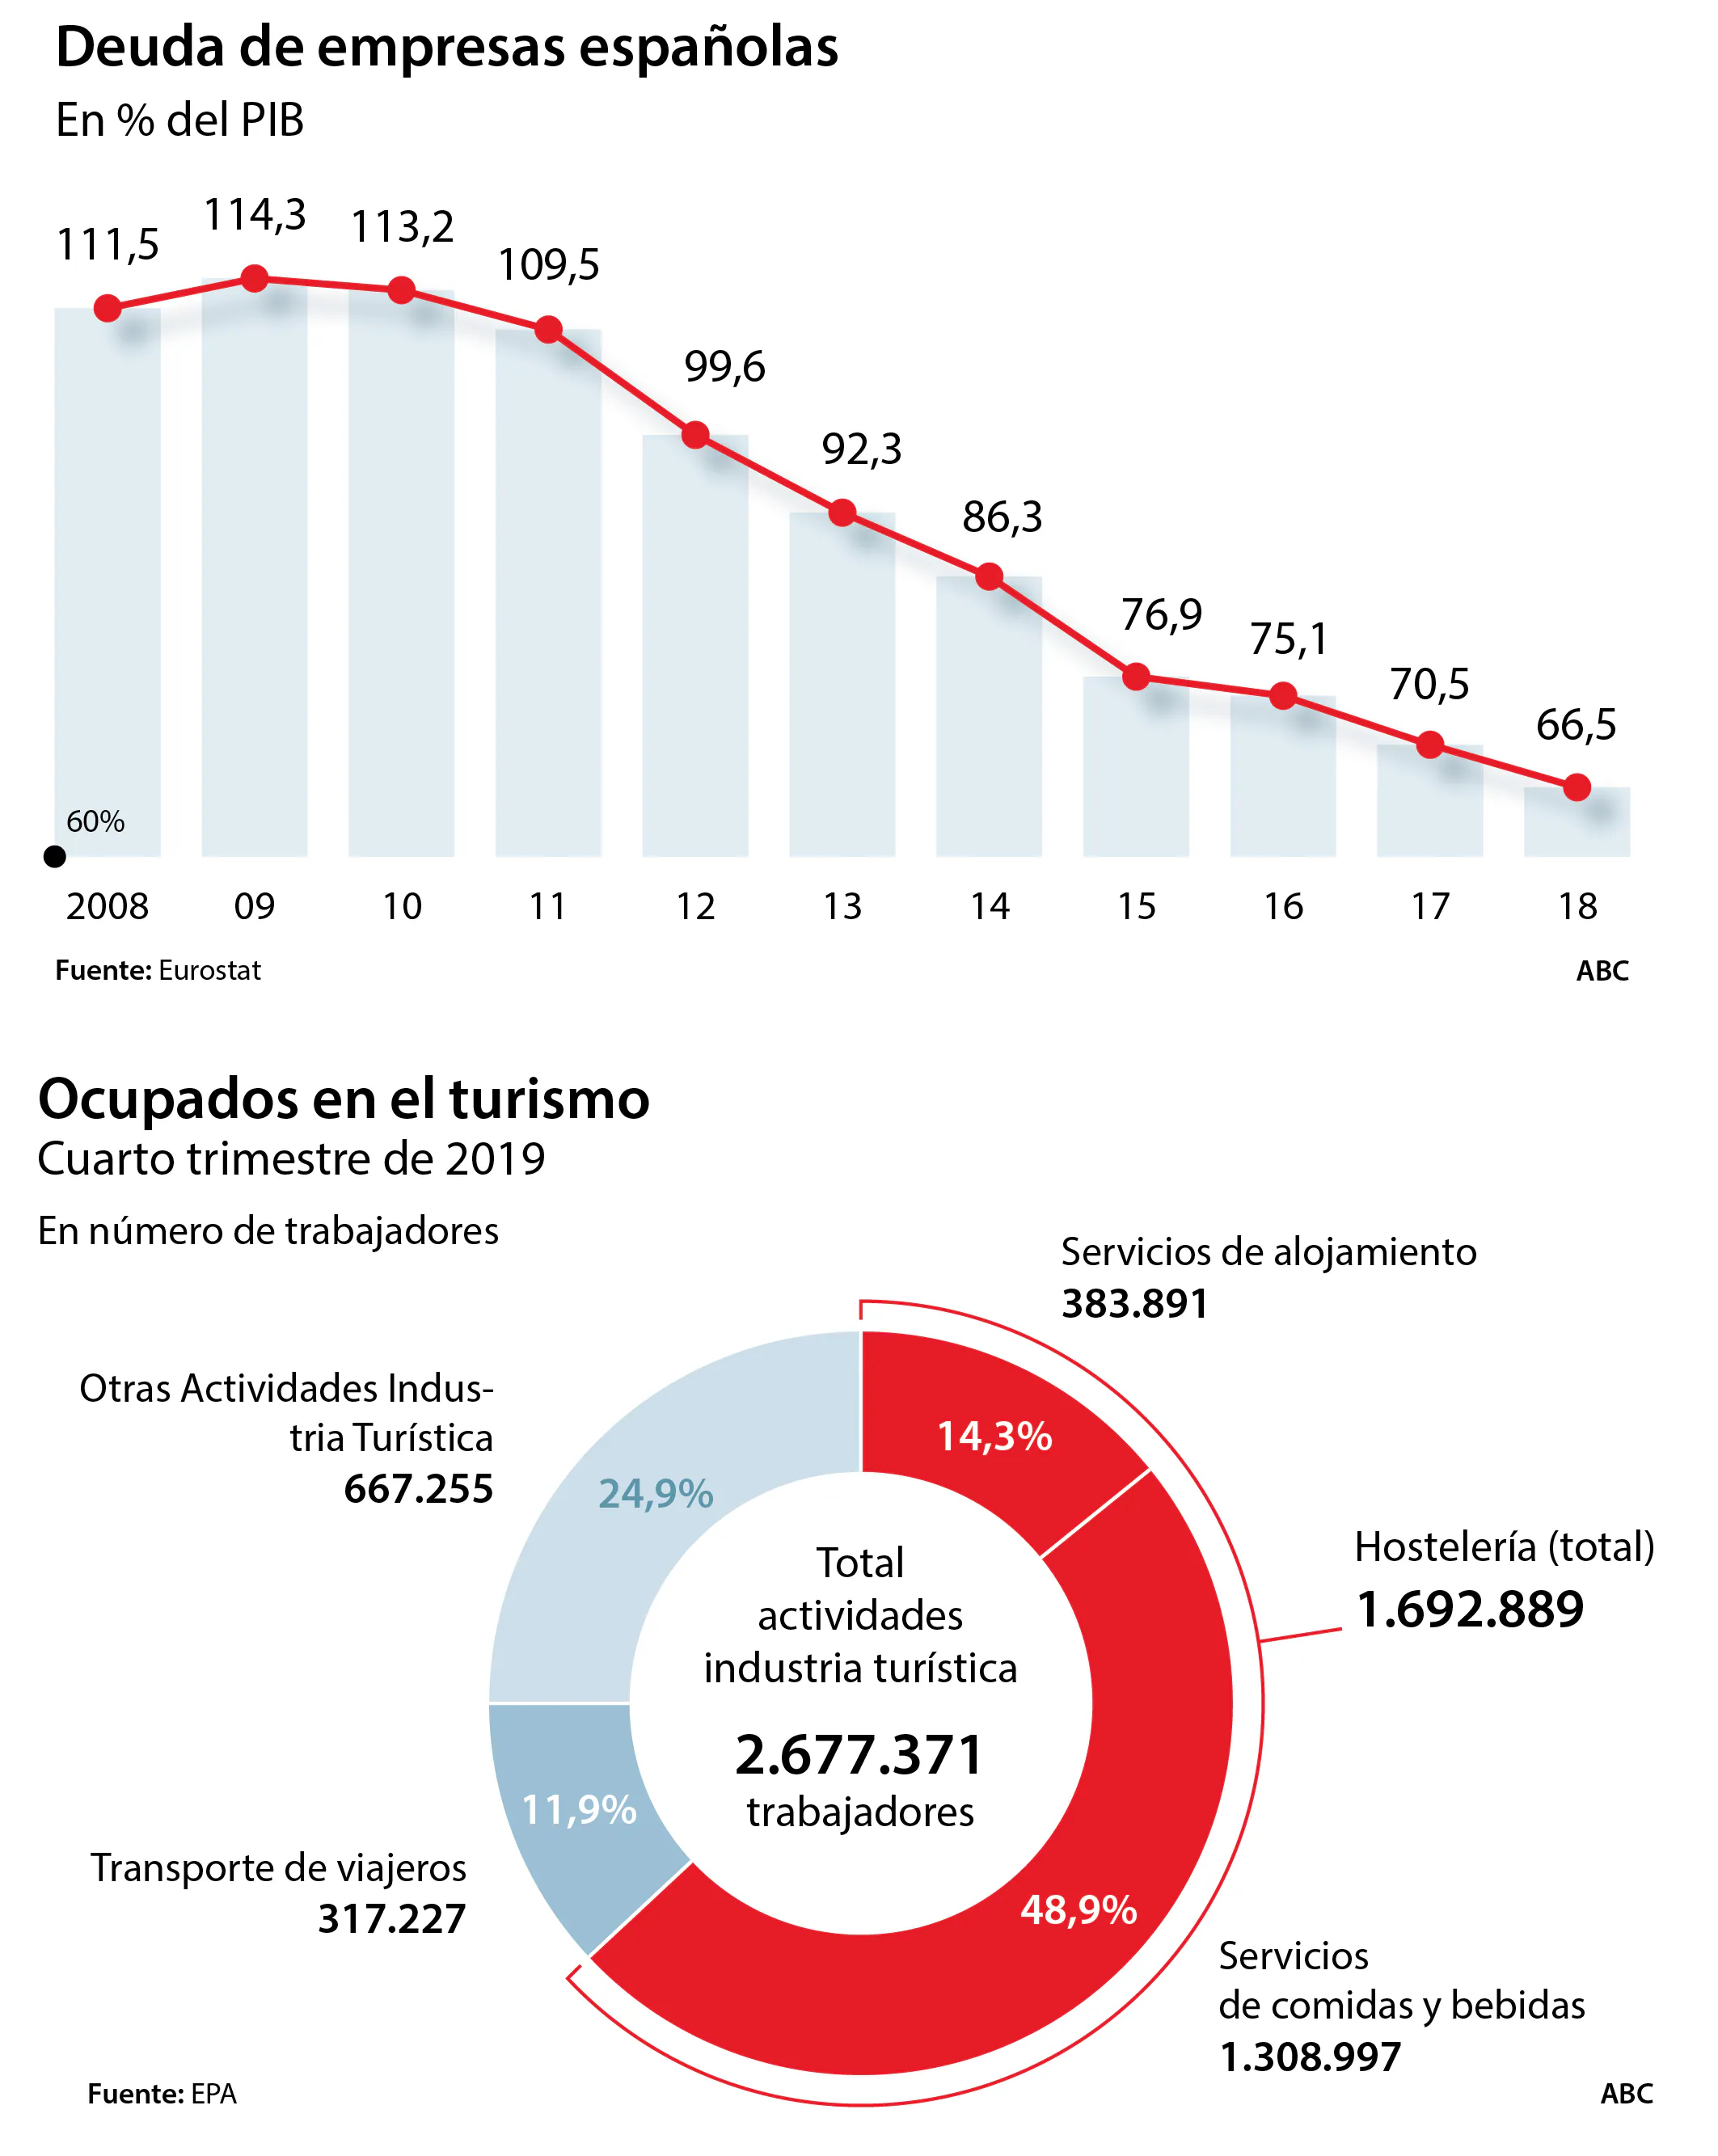 La economía española, paciente de riesgo: turismo, pymes y alta temporalidad